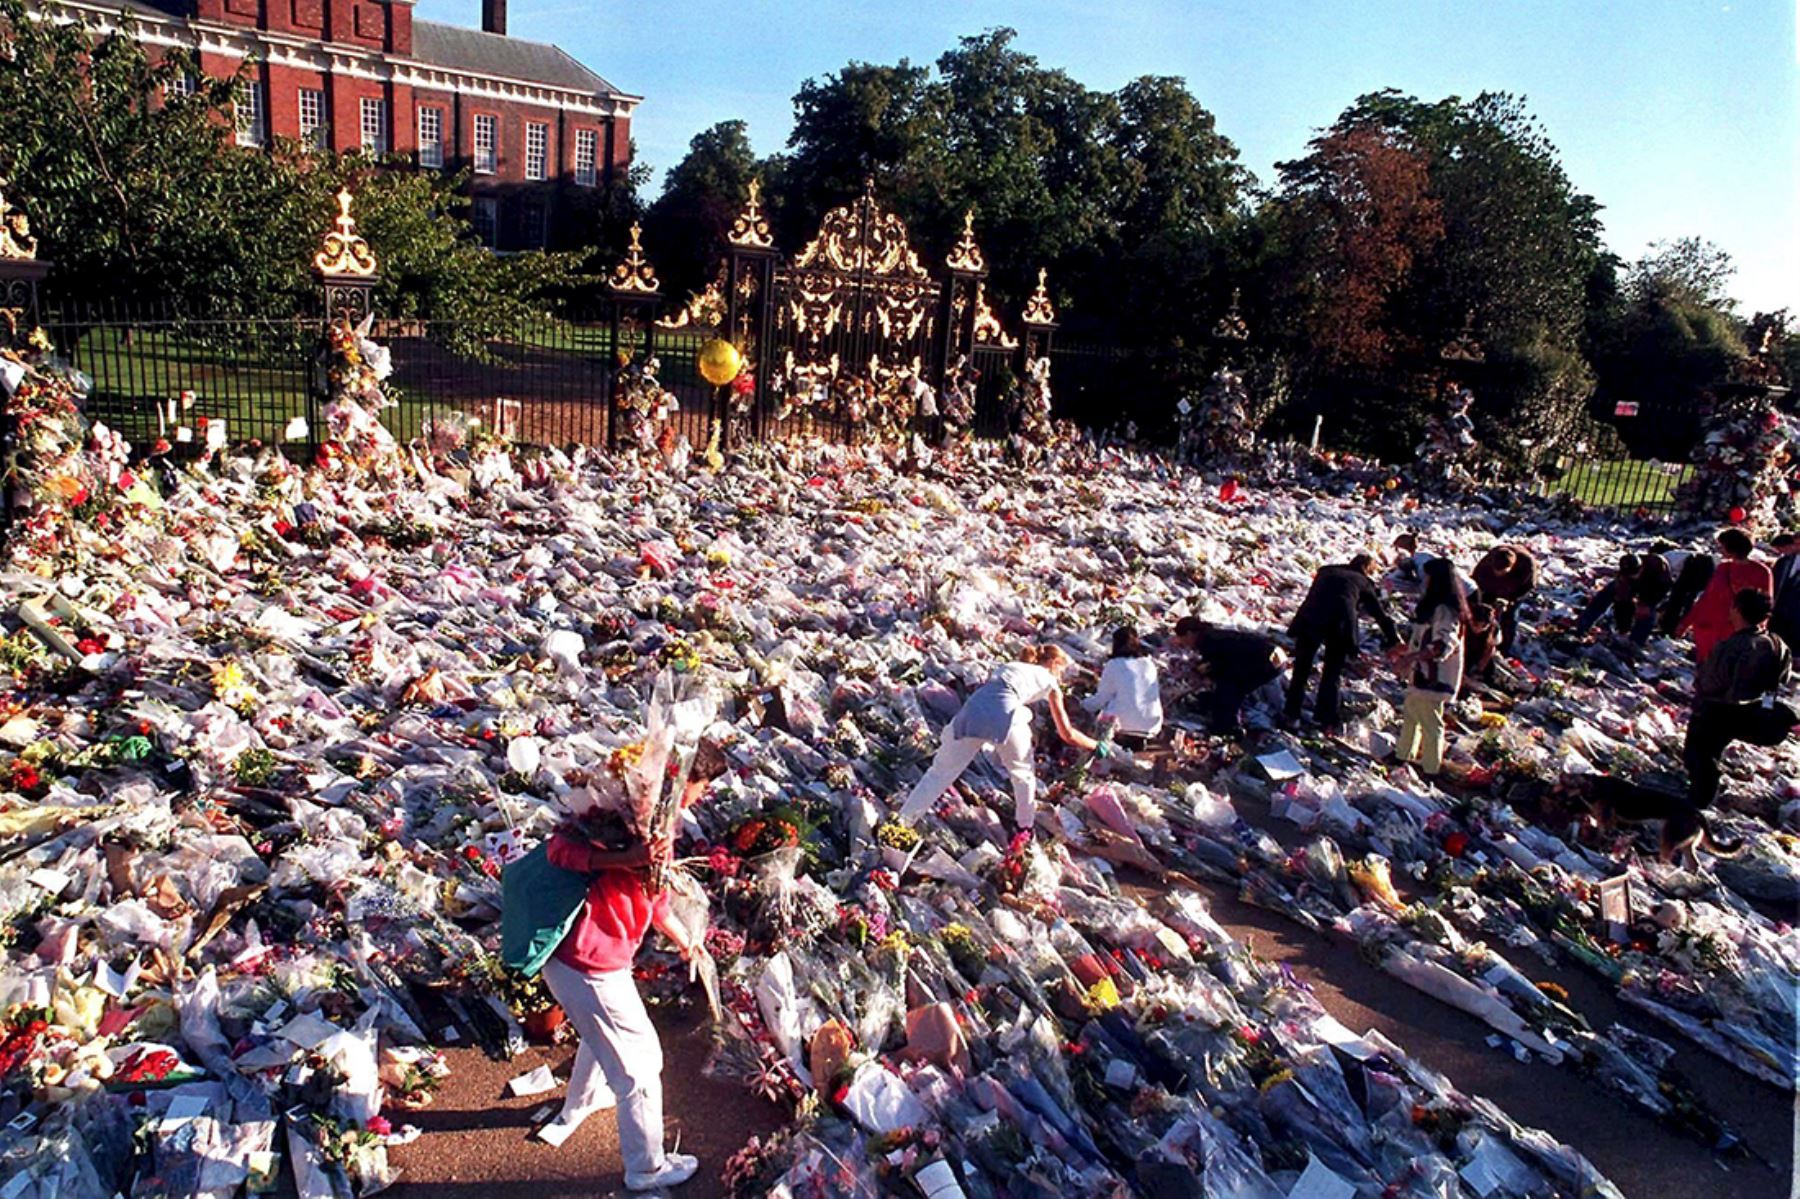 2 de septiembre de 1997 del Palacio de Kensington, residencia de la princesa Diana de Gales, con la entrada repleta de flores dos días después de conocerse su muerte en un accidente en Paris. Foto: EFE